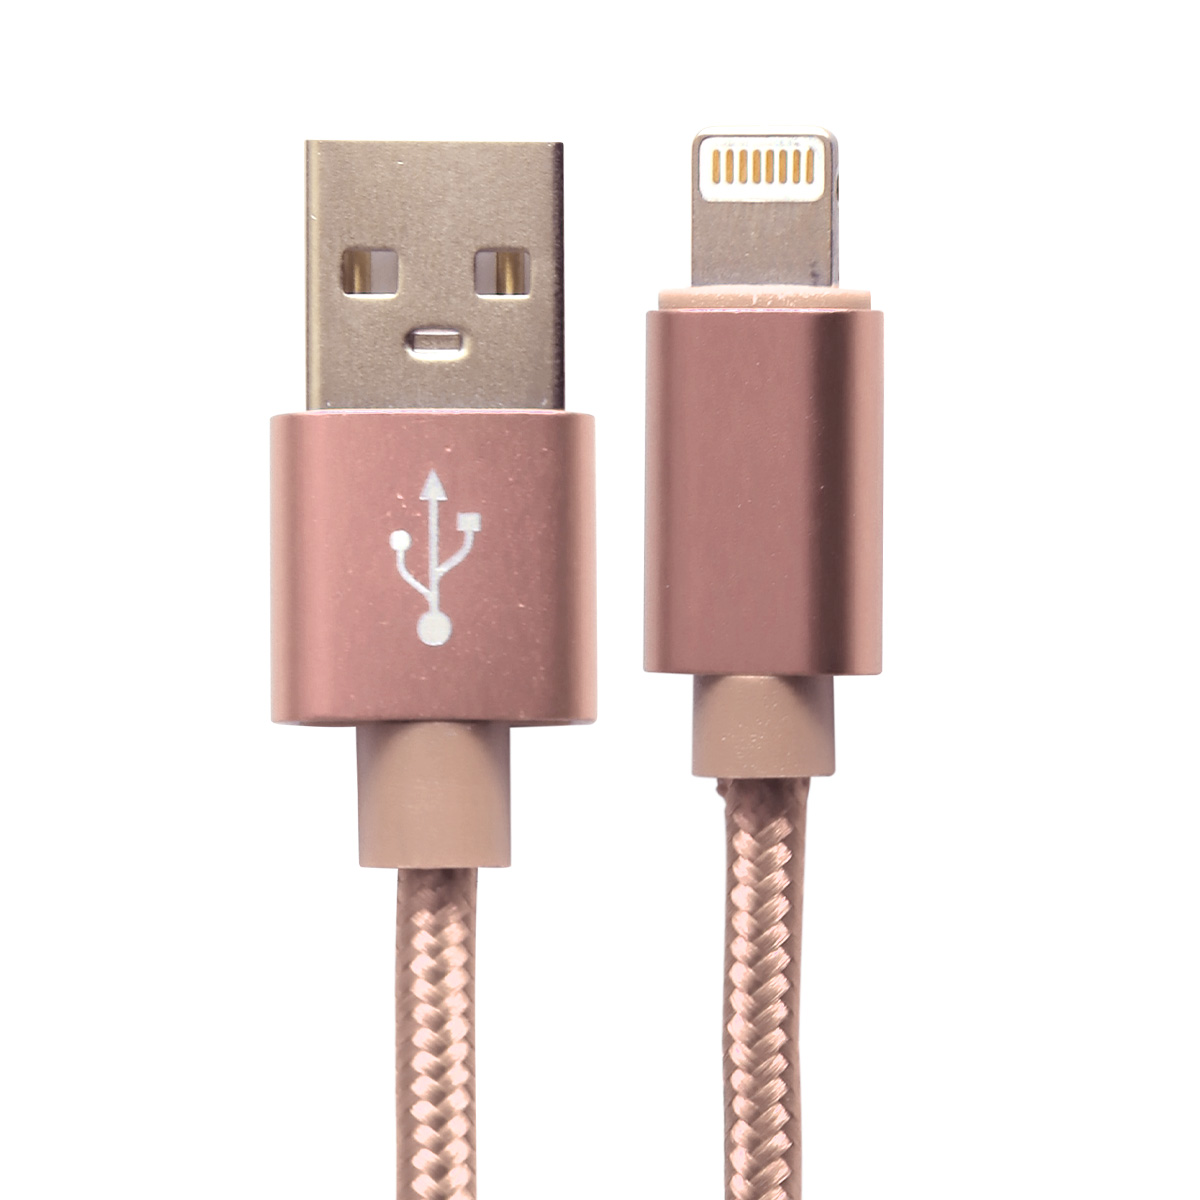 マジックロープ USB充電ケーブル 磁気360度自動巻 USBデータケーブル A